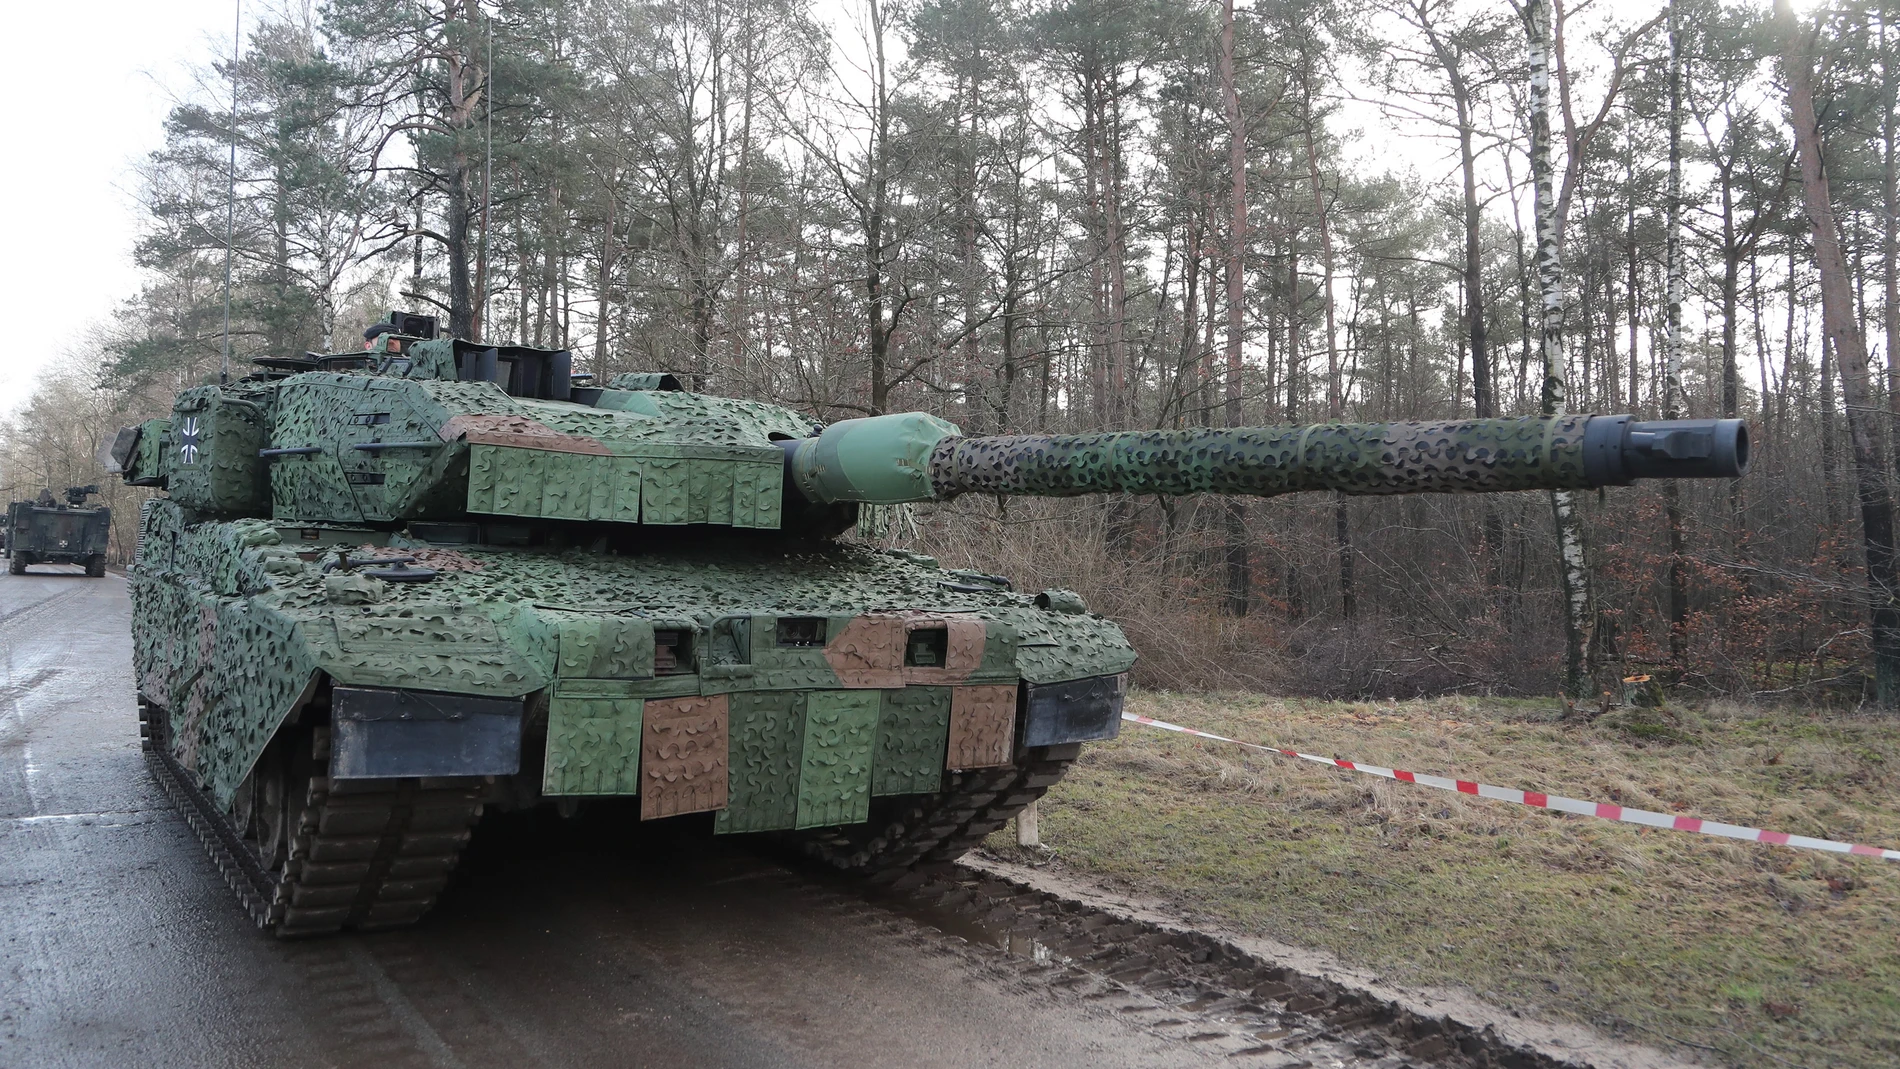 Un tanque de combate alemán tipo Leopard 2A7V en la Brigada Panzerlehr de la Bundeswehr alemana en Munster